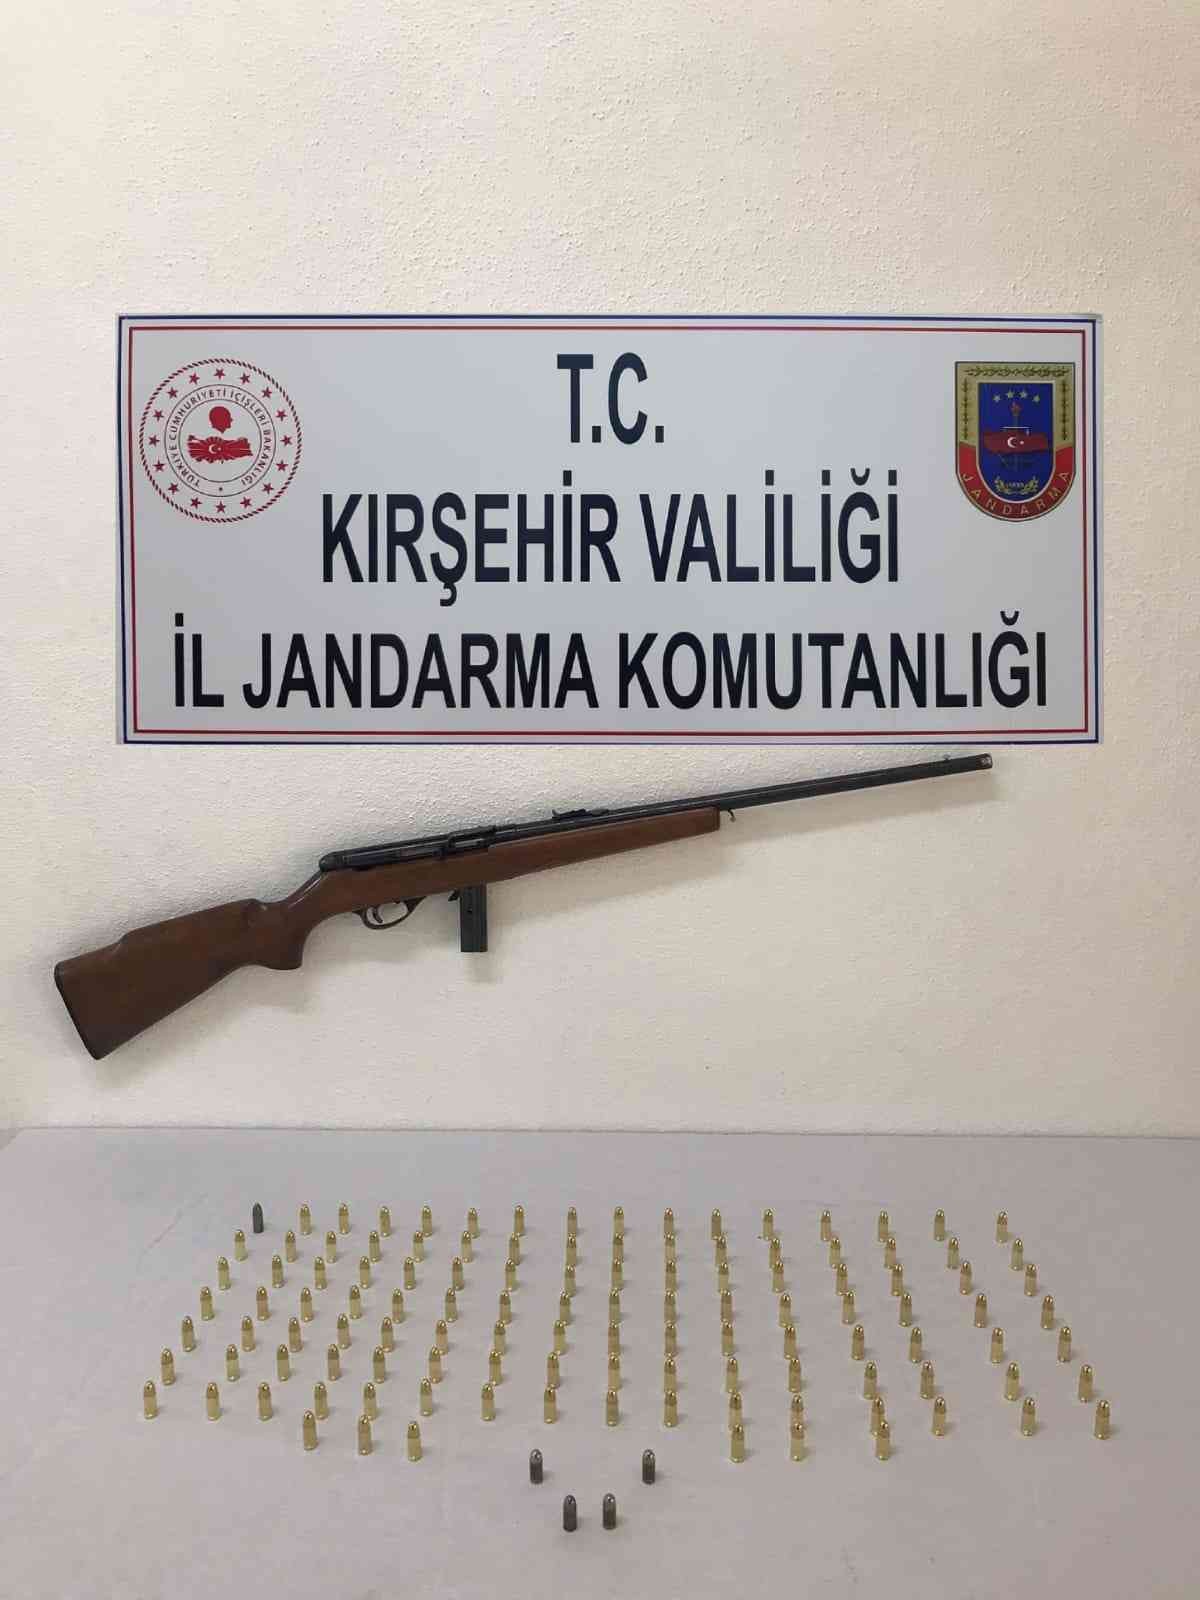 Kırşehir’de saldırı tüfeği ele geçirildi #kirsehir